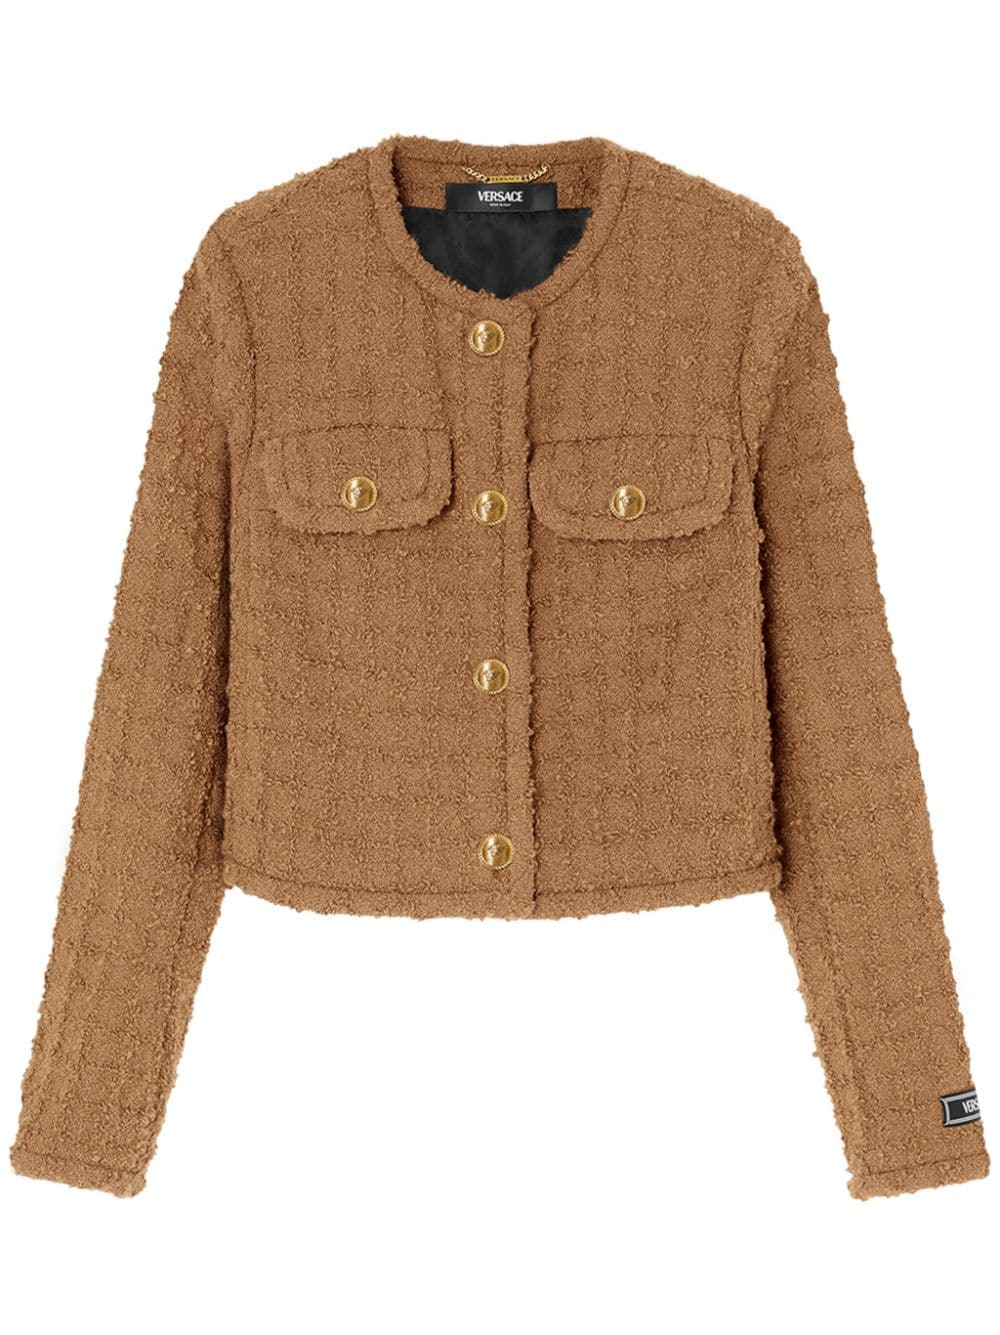 Versace Heritage Tweed Cardigan Jacket In Brown